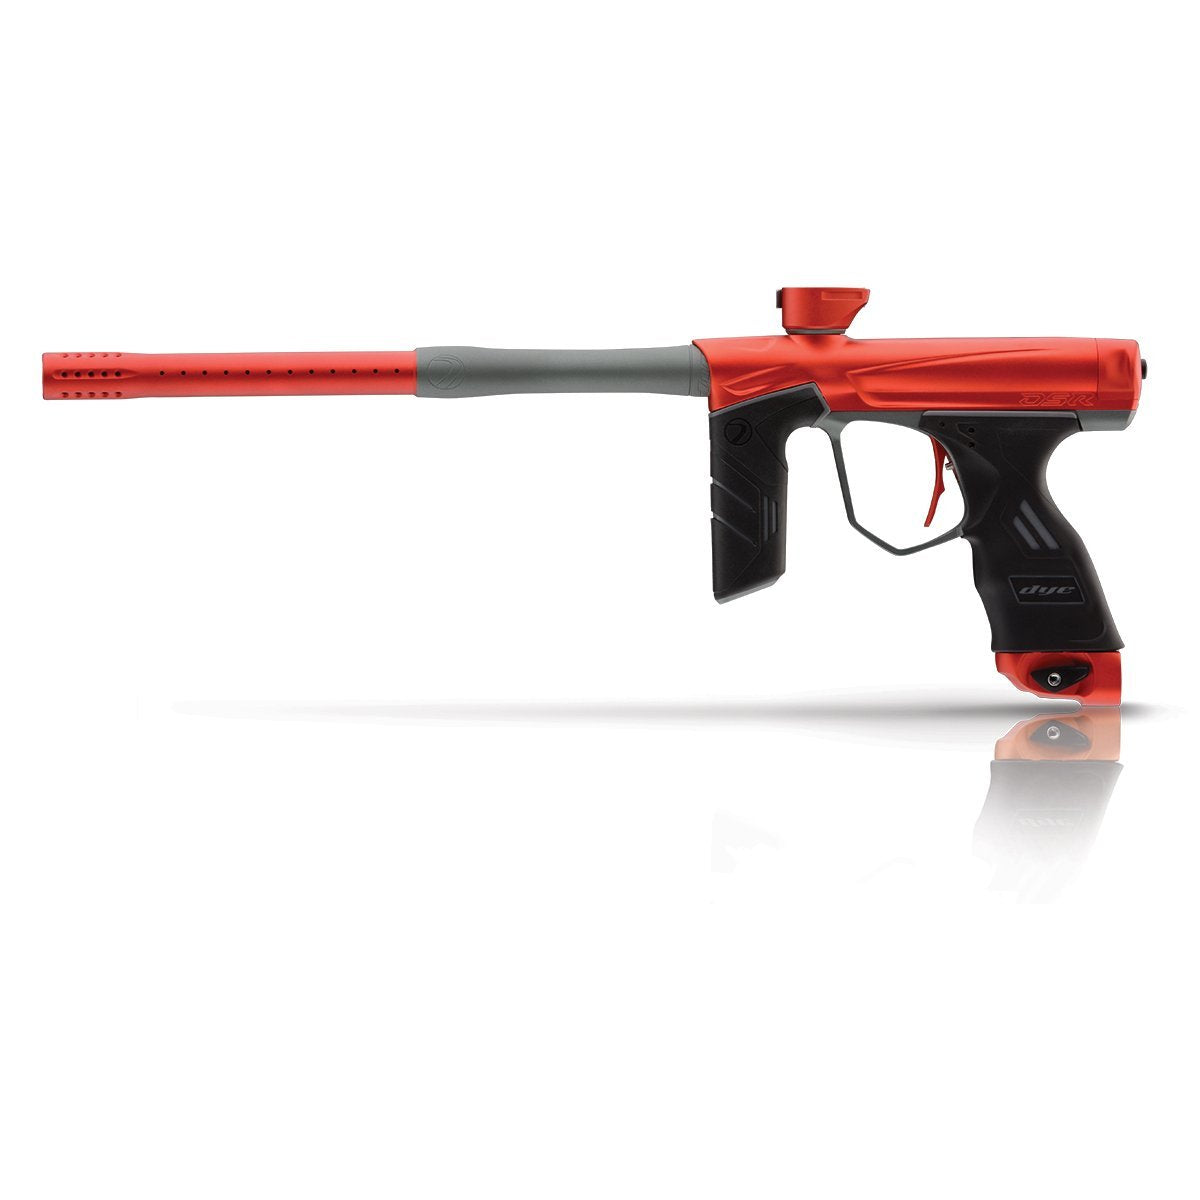 Dye DSR Paintball Gun - Blaze Red / Gray - DYE